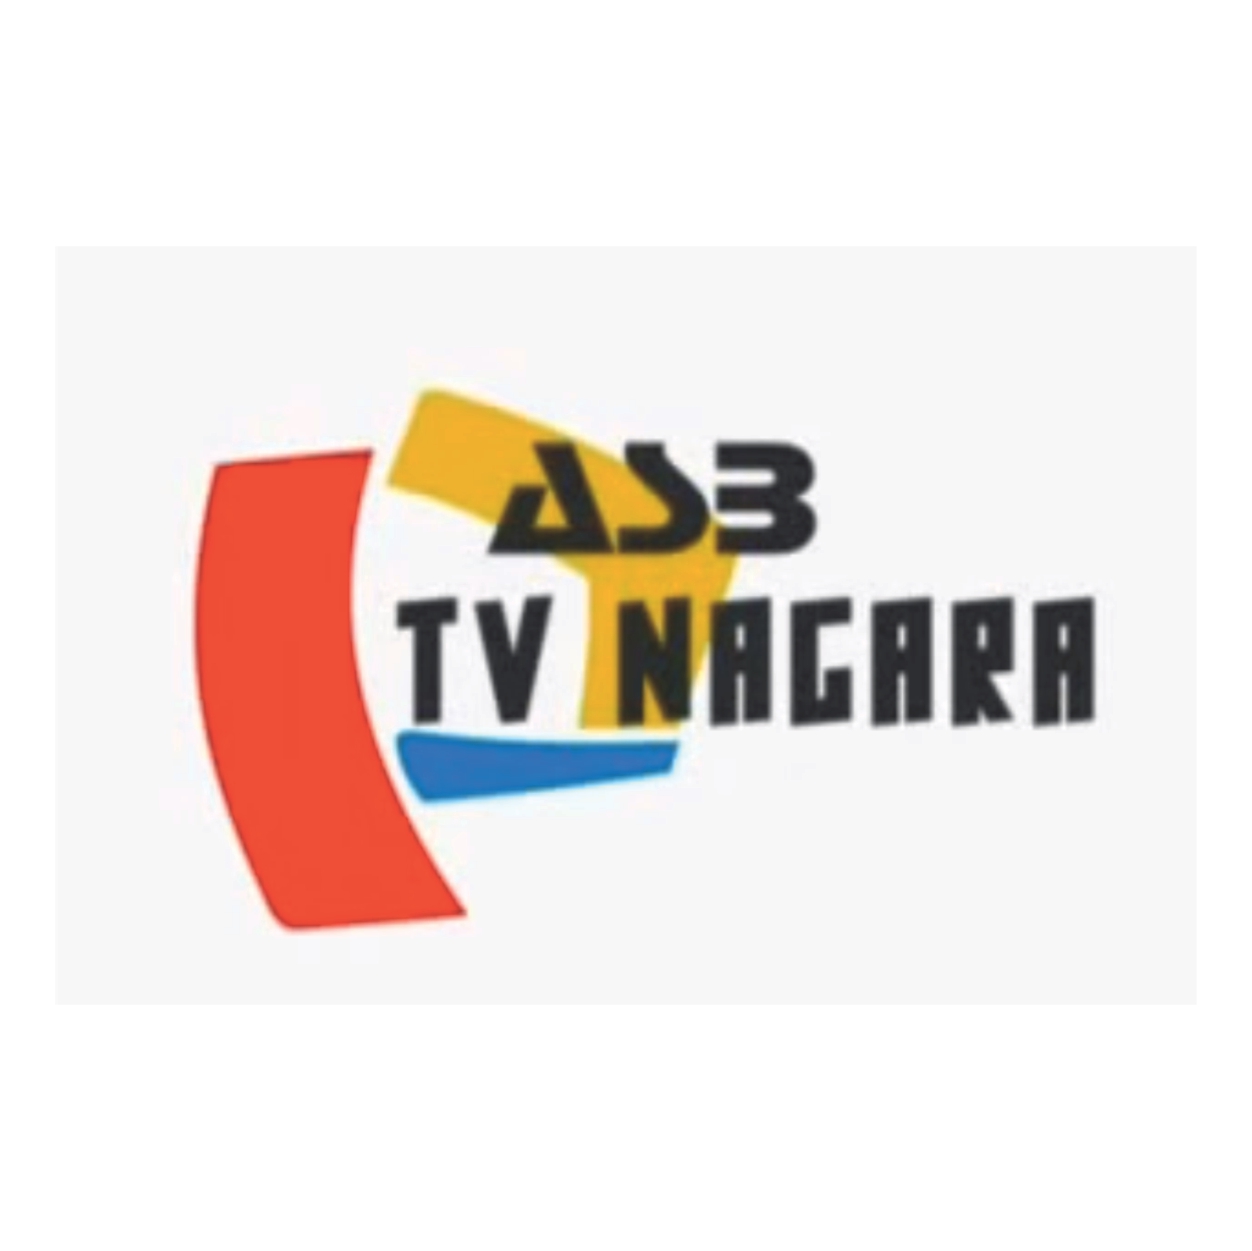 TV Nagara